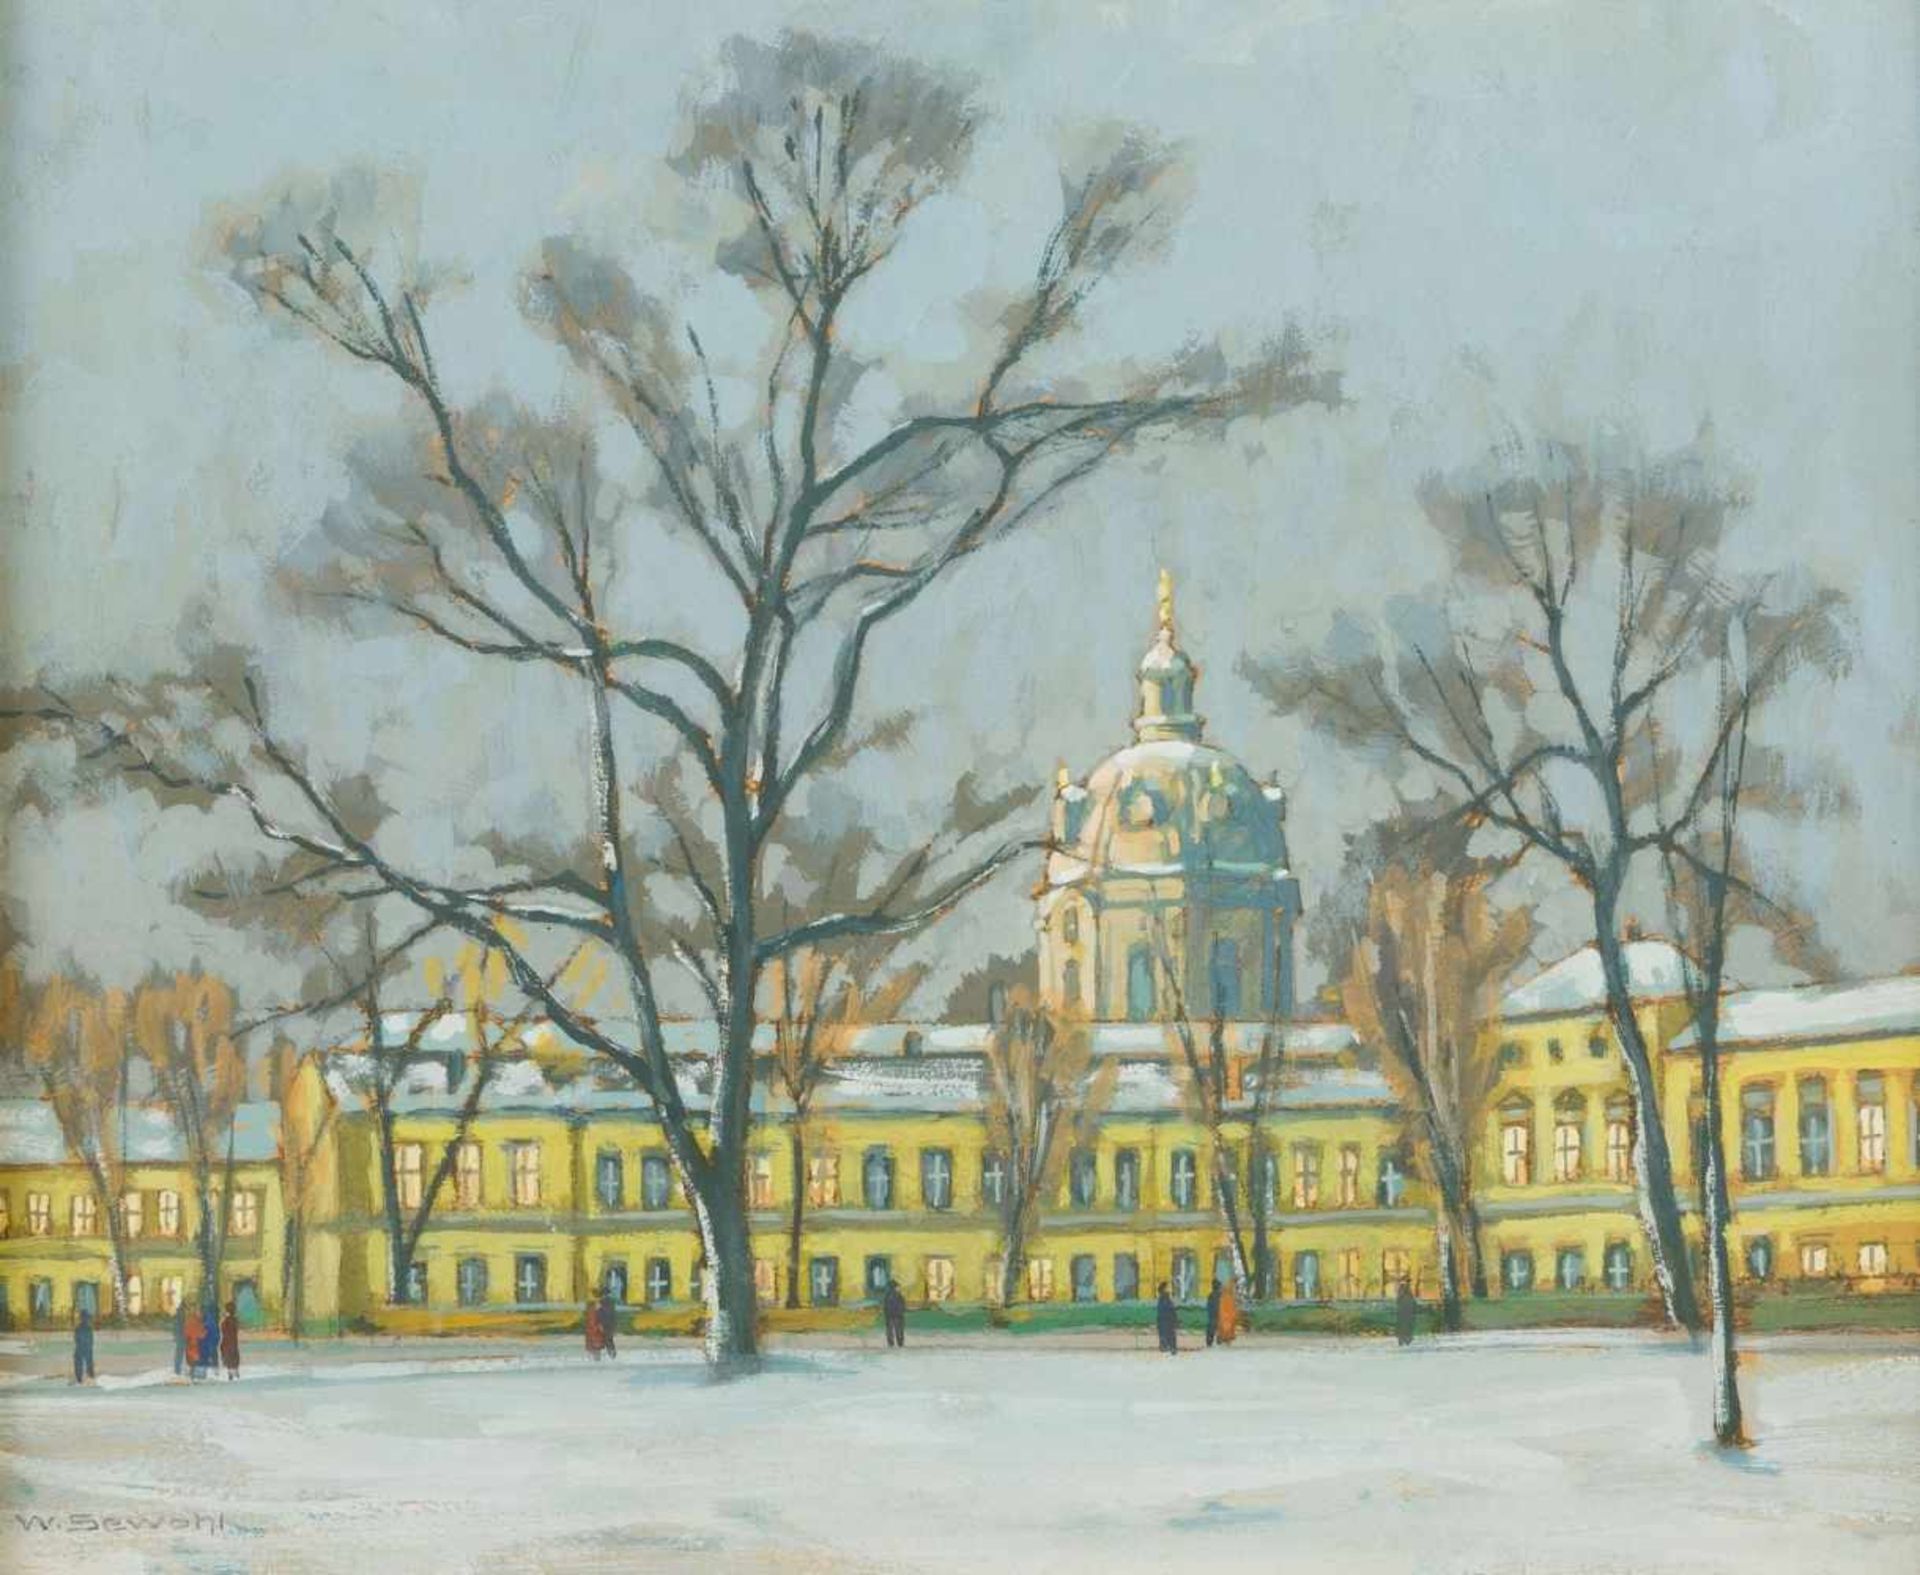 Sewohl, Waldemar (Wismar, Berlin 1887-1969) Berlin. Winterliche Ansicht von Schloss Charlottenburg.